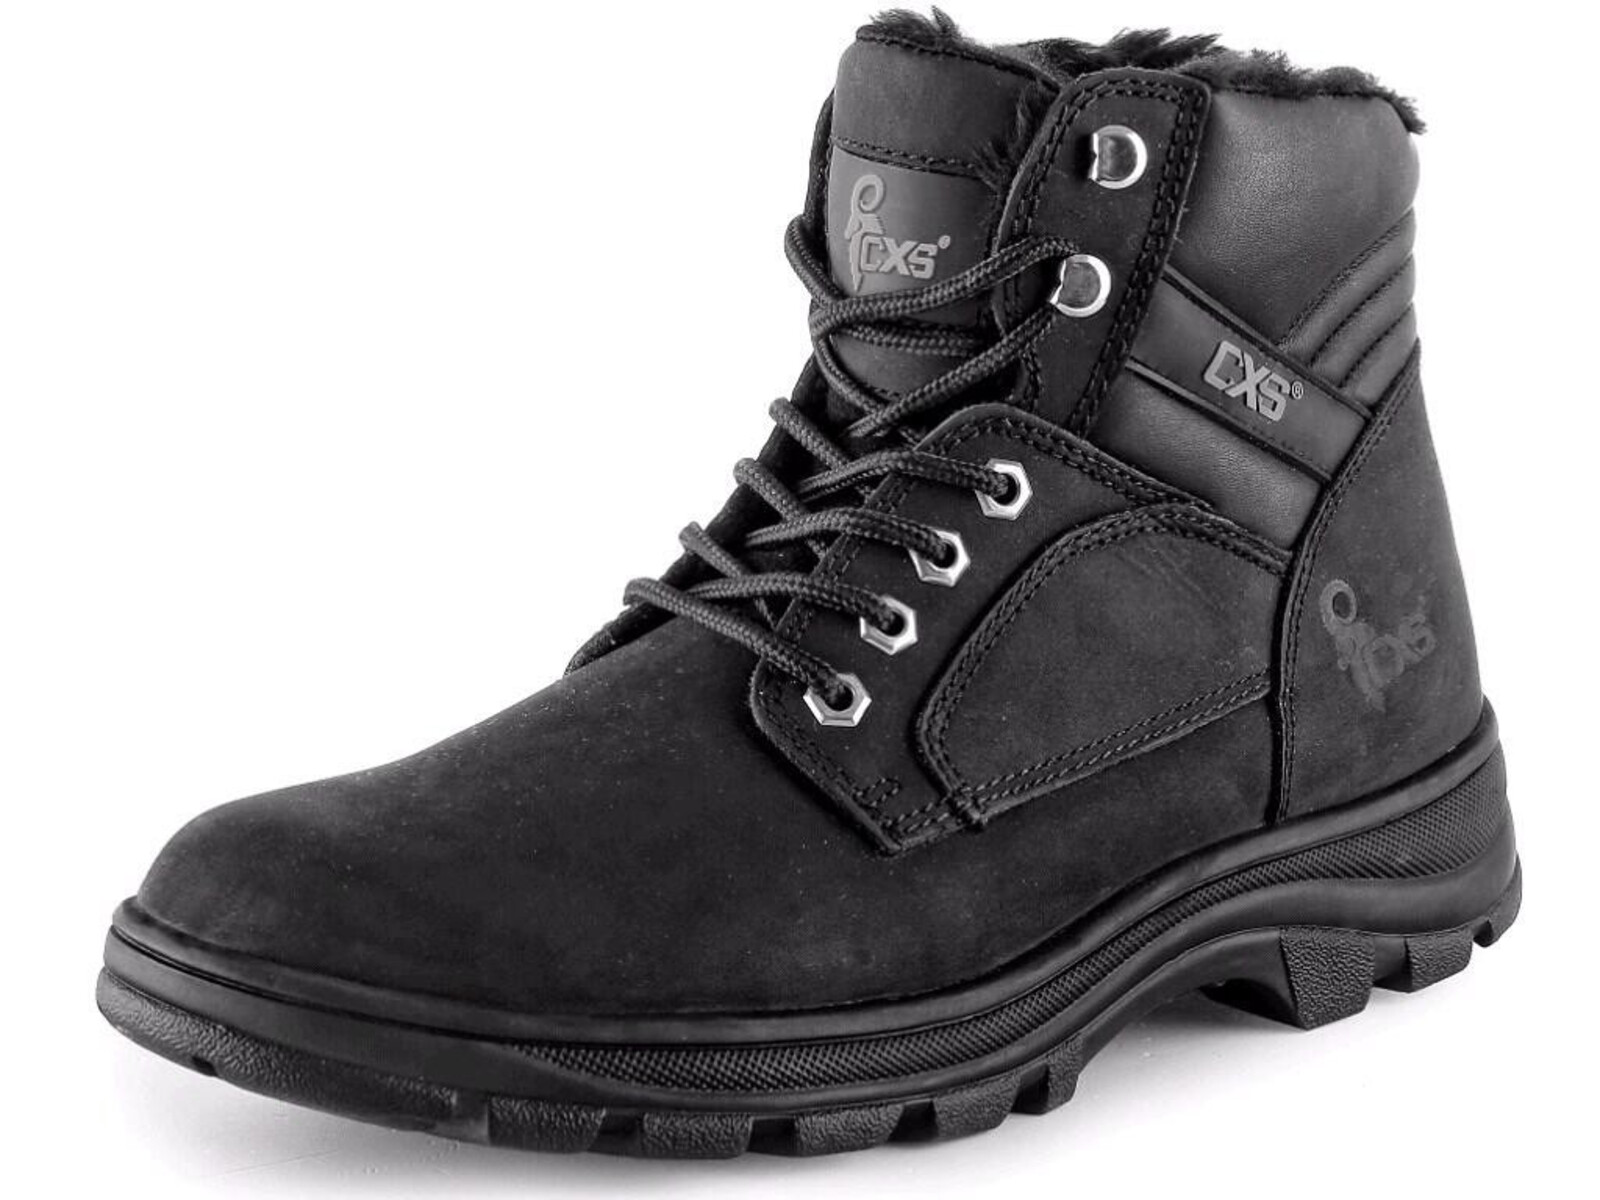 Zimná členková obuv CXS Road Industry FO E CI SRA - veľkosť: 47, farba: čierna